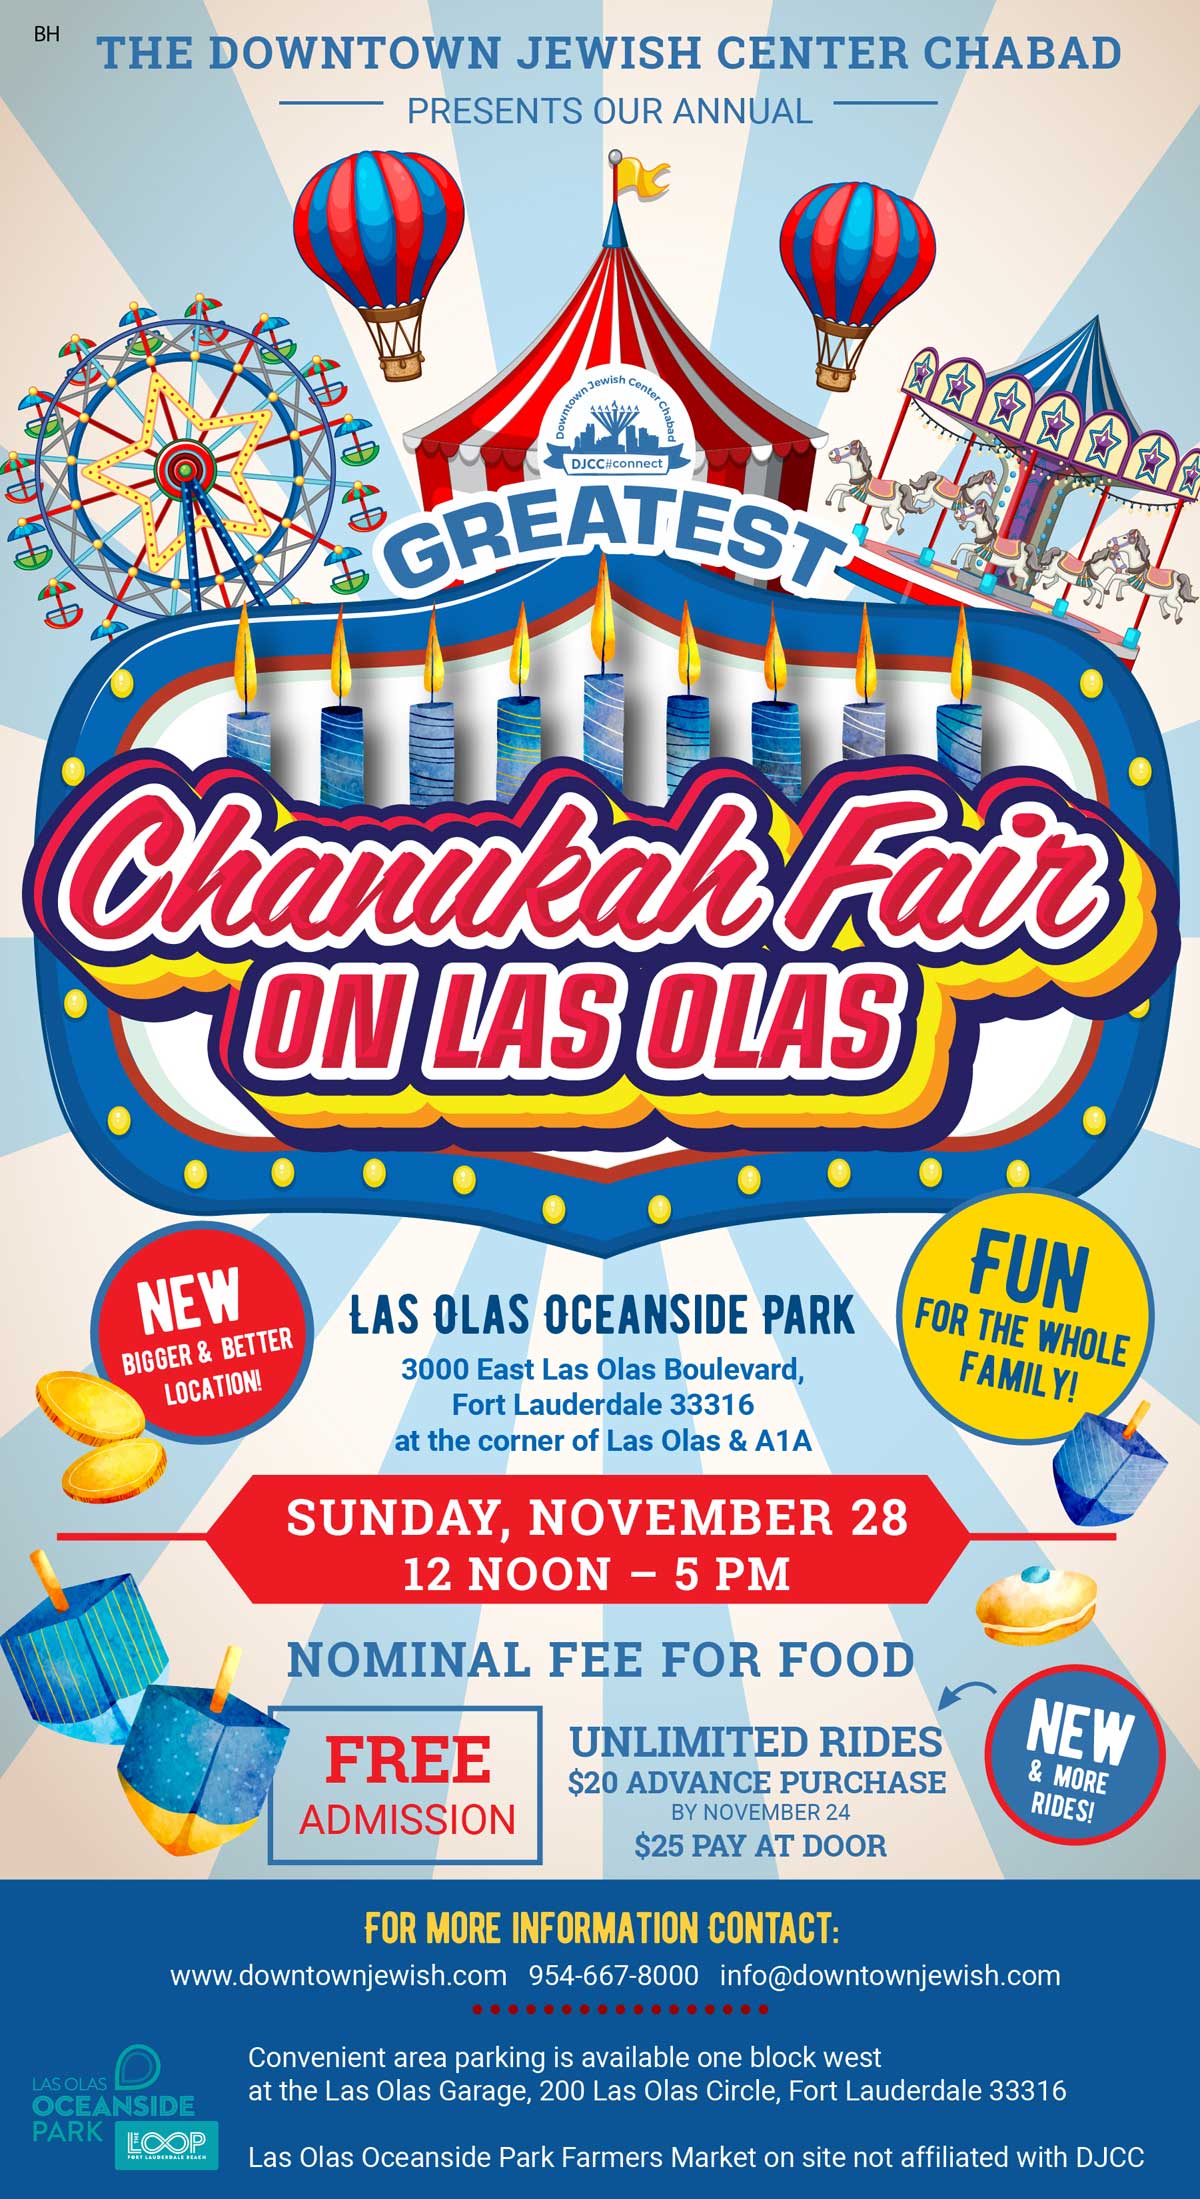 Chanukah Fair On Las Olas